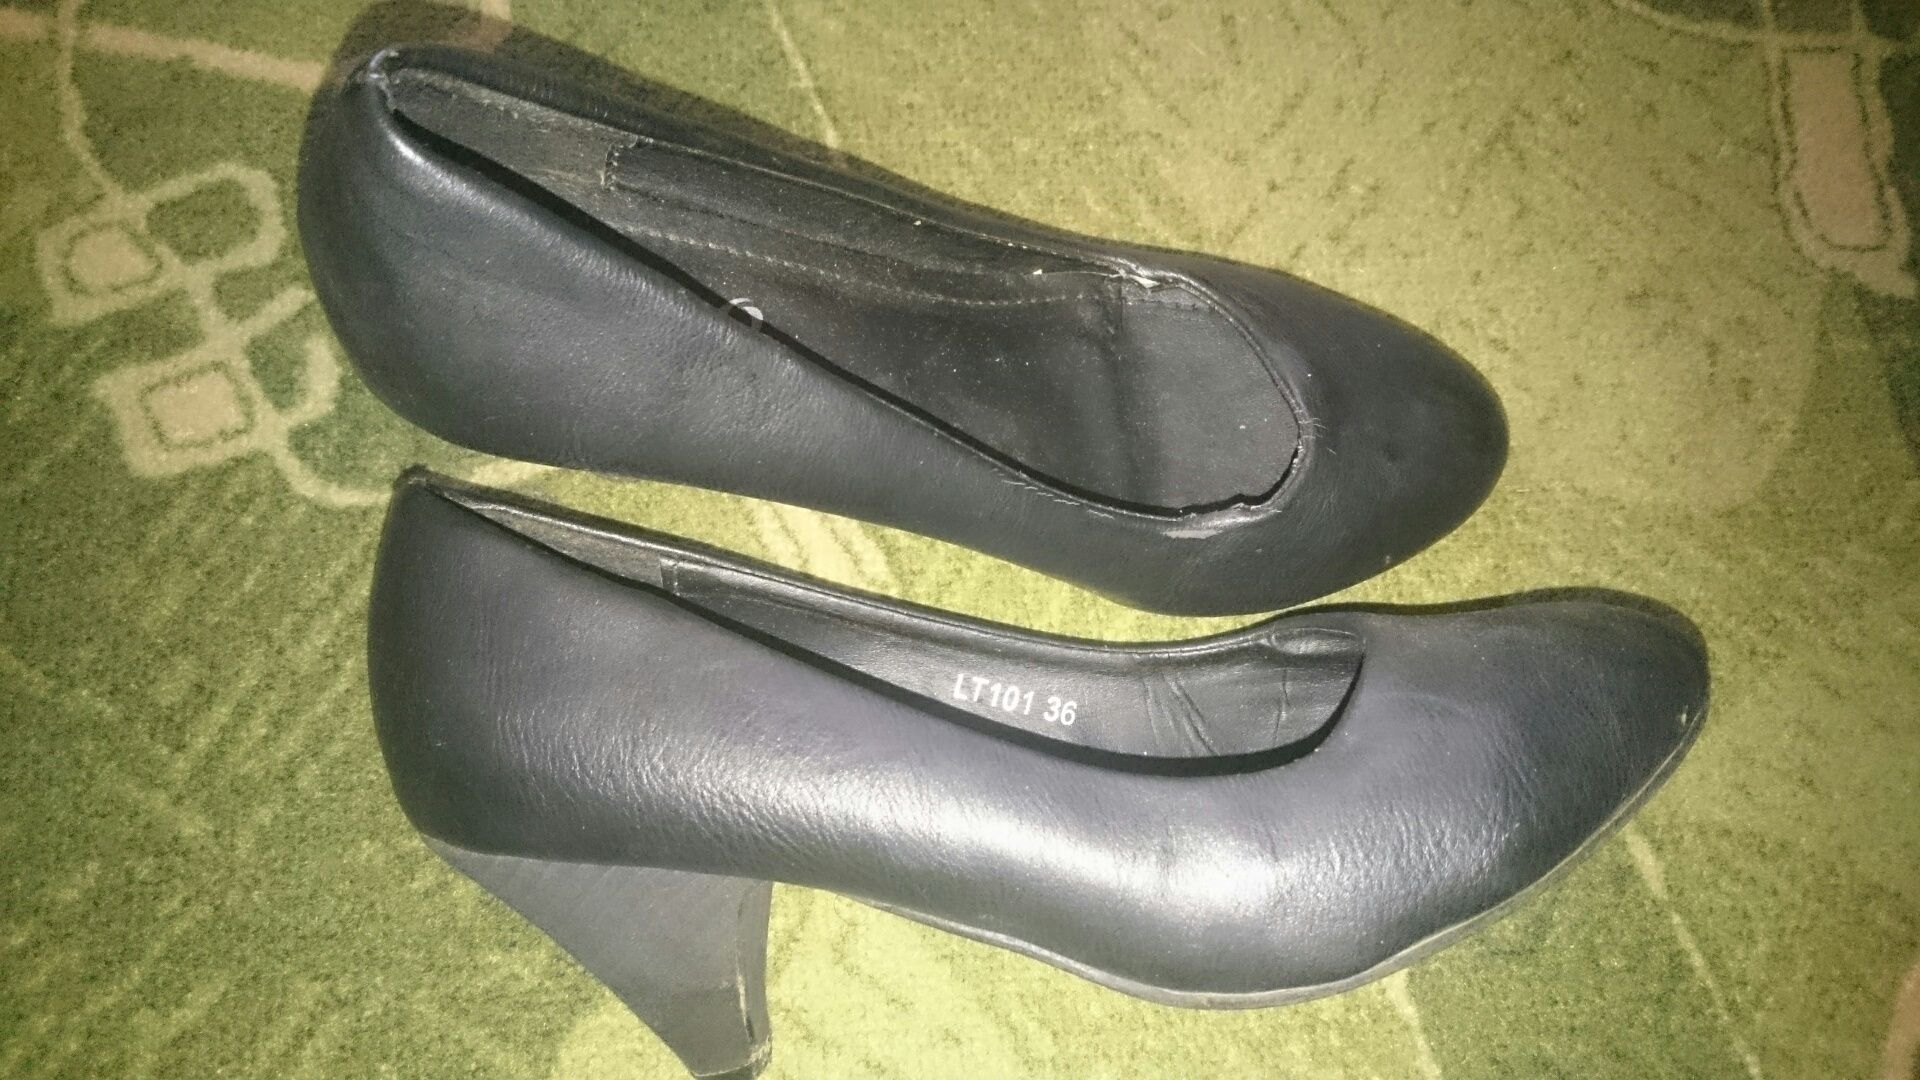 Buty czarne pantofle na niskim obcasie rozmiar 36 dł wkładki 22,5 cm